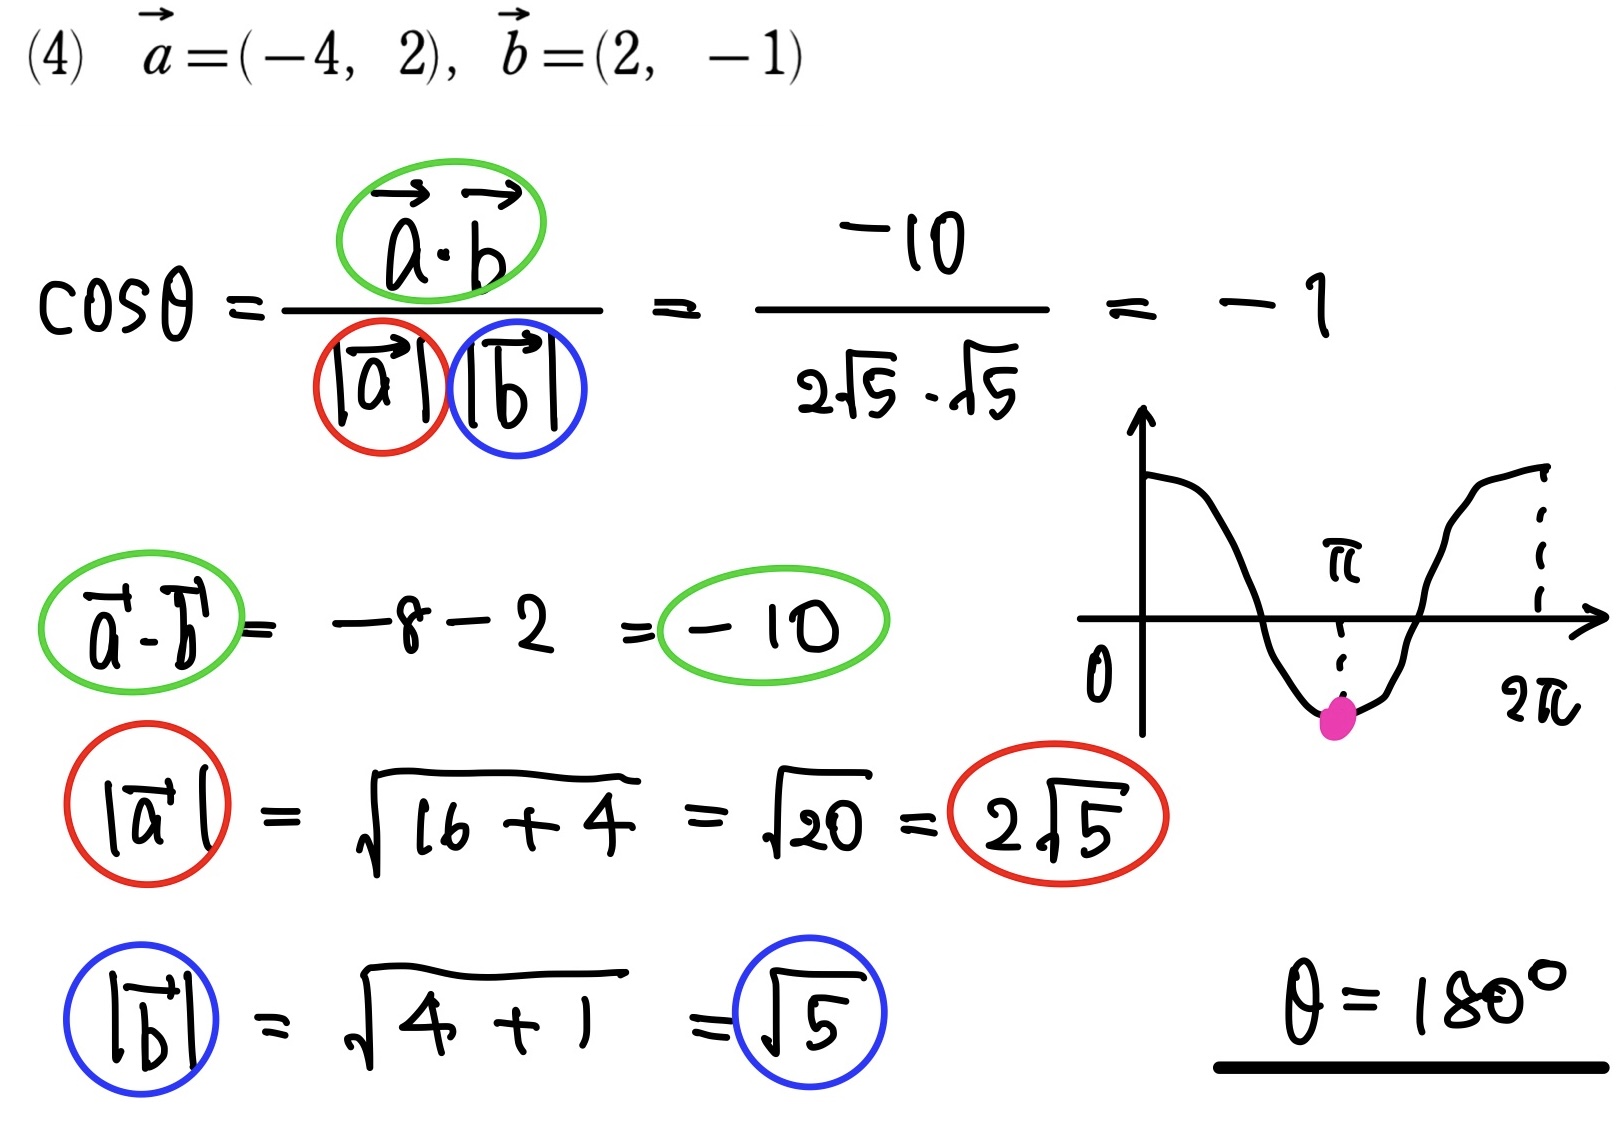 ベクトルのなす角　(4)の解答